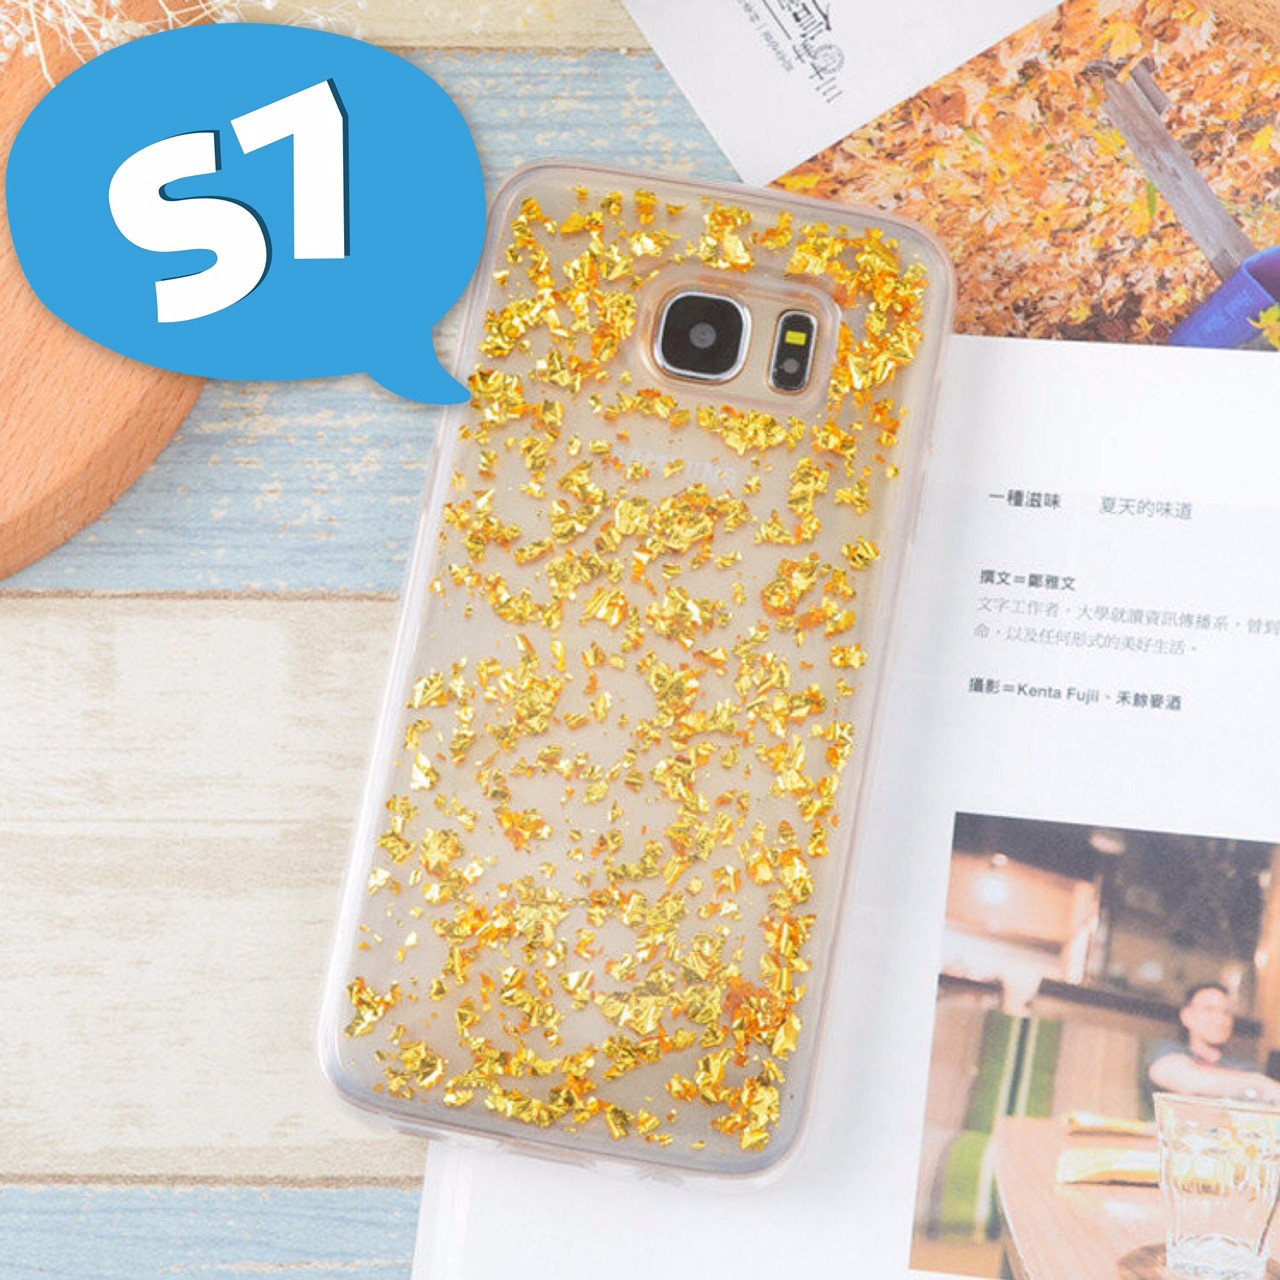 Θηκη TPU "Bling" - Samsung Galaxy S7 - Χρυσο - iThinksmart.gr